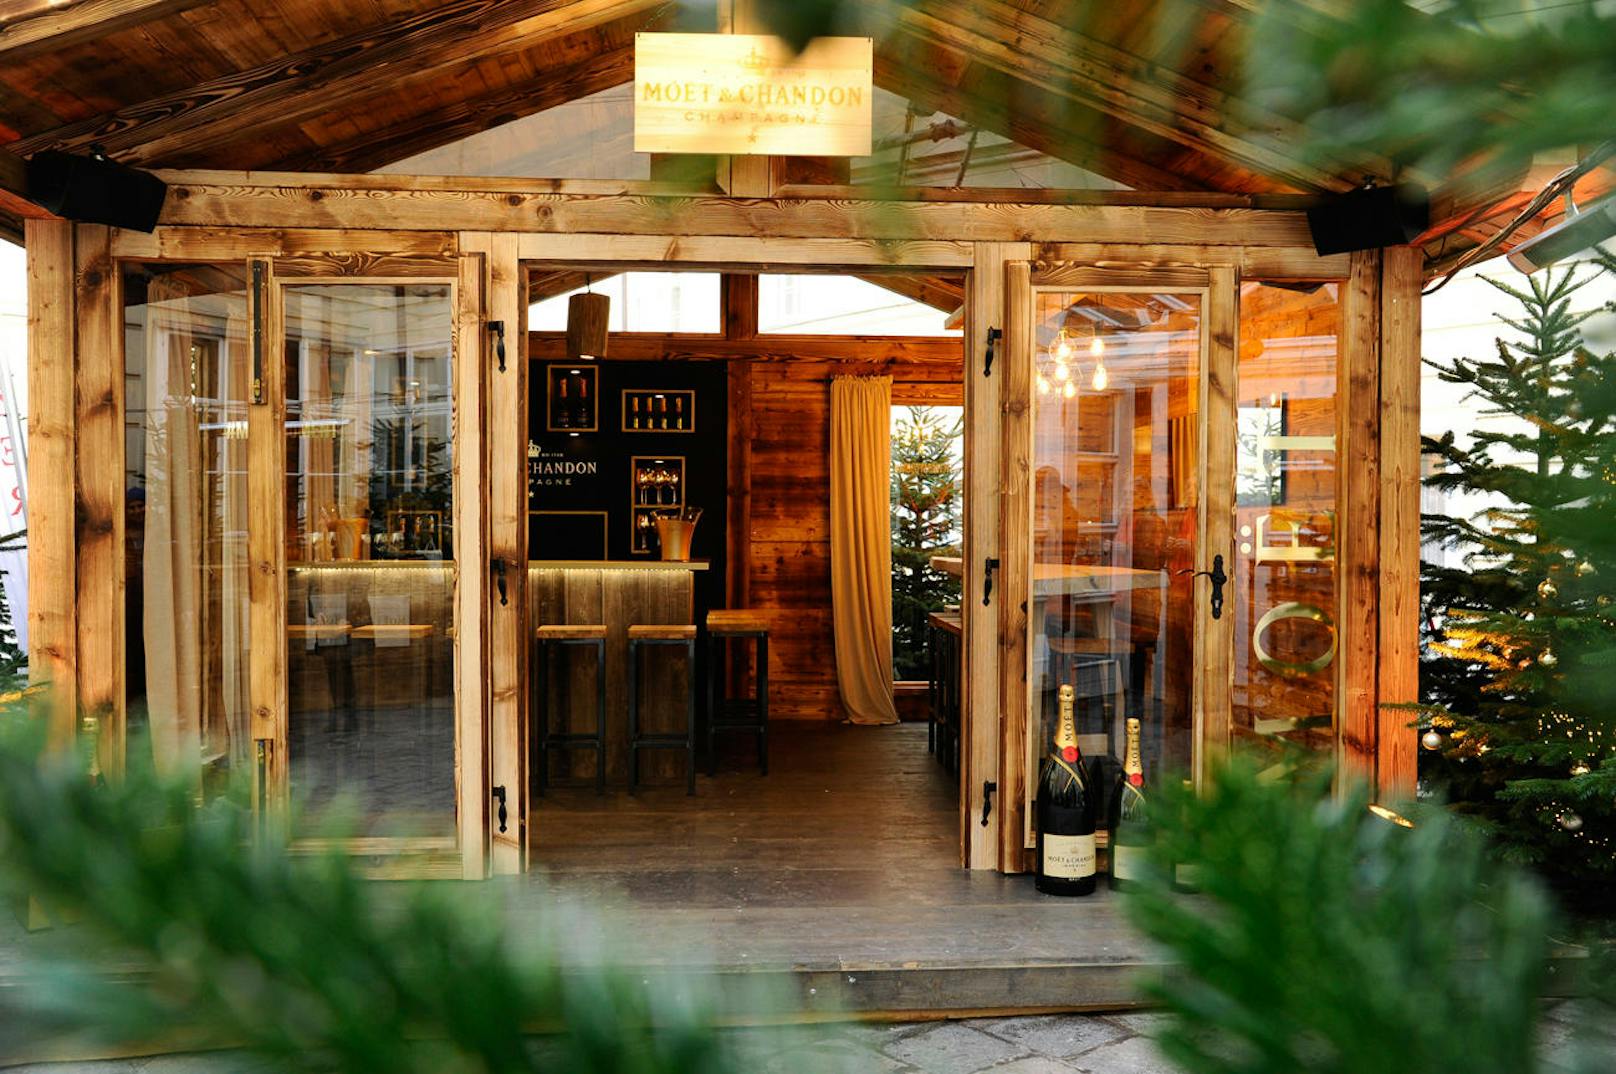 Das Moët & Chandon Winter Chalet lockt von 1. Dezember 2017 bis 7. Jänner 2018 mit entspannter, winterlicher Atmosphäre in den Innenhof der renommierten Pizzeria Regina Margherita.